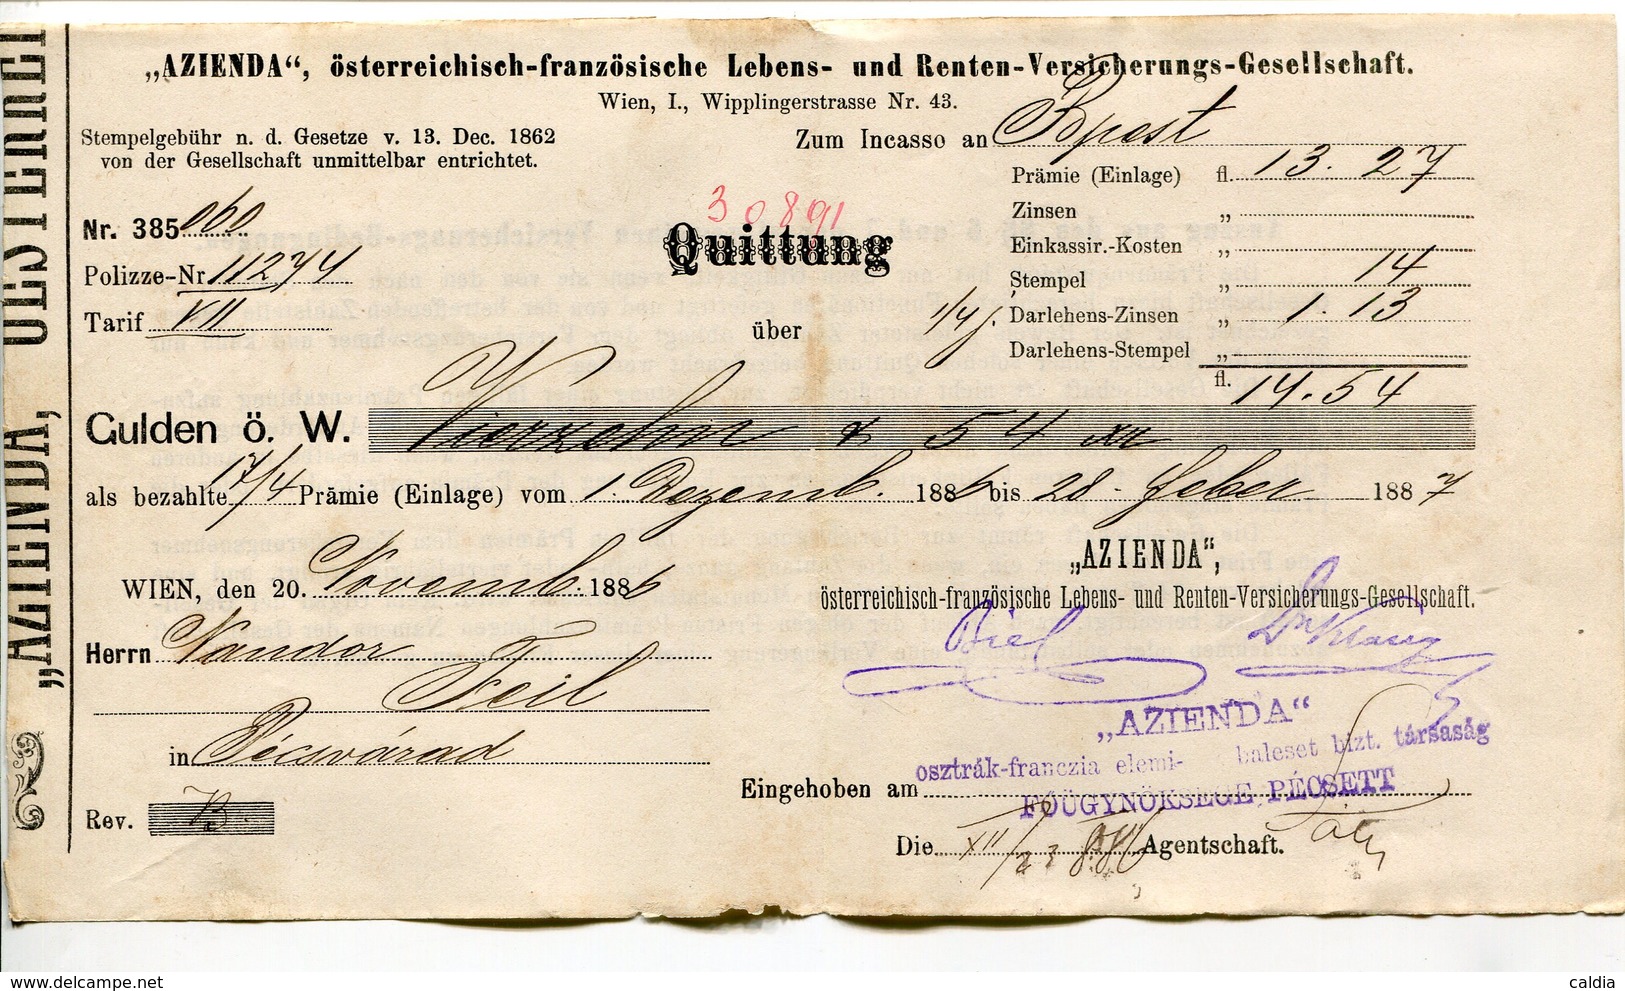 Autriche Austria Österreich Ticket QUITTUNG " AZIENDA " Austria - France Society 1887 # 2 - Austria